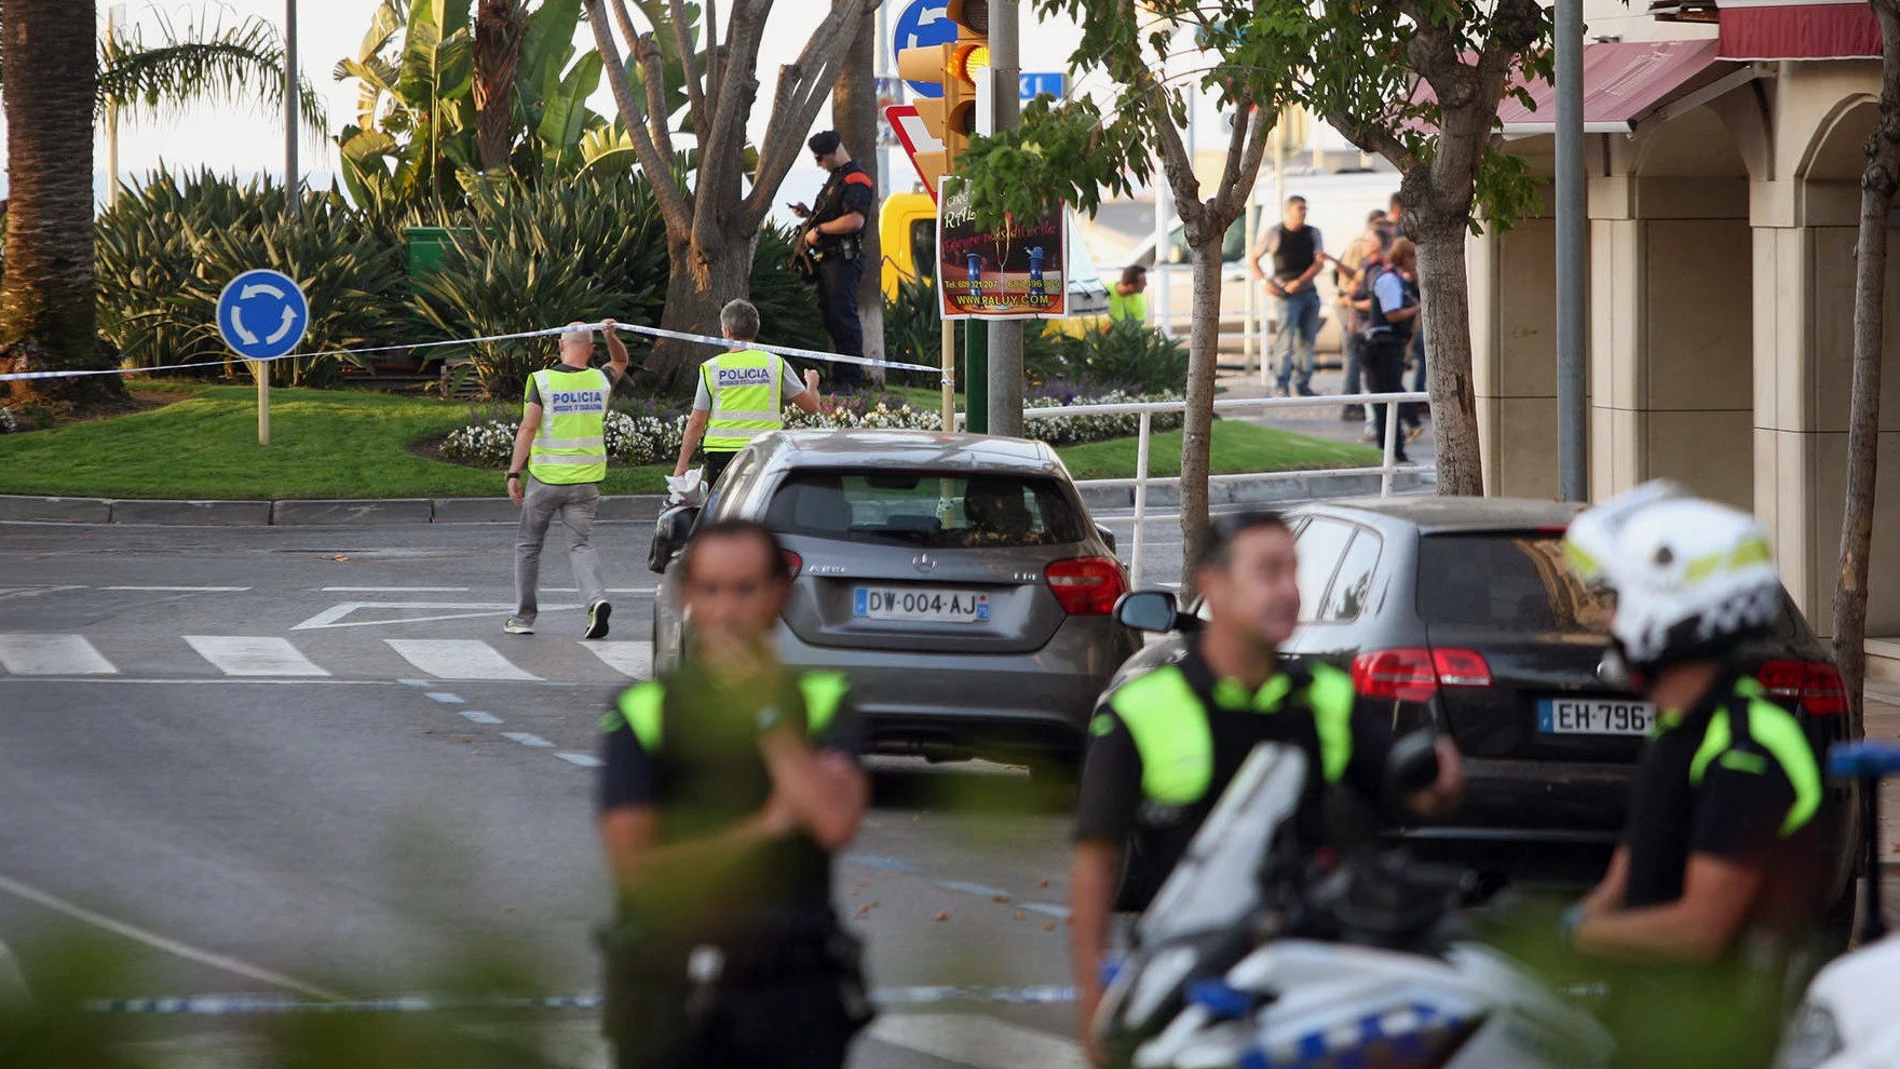 Los Mossos d'Esquadra han abatido esta noche a cuatro presuntos terroristas en Cambrils (Tarragona)